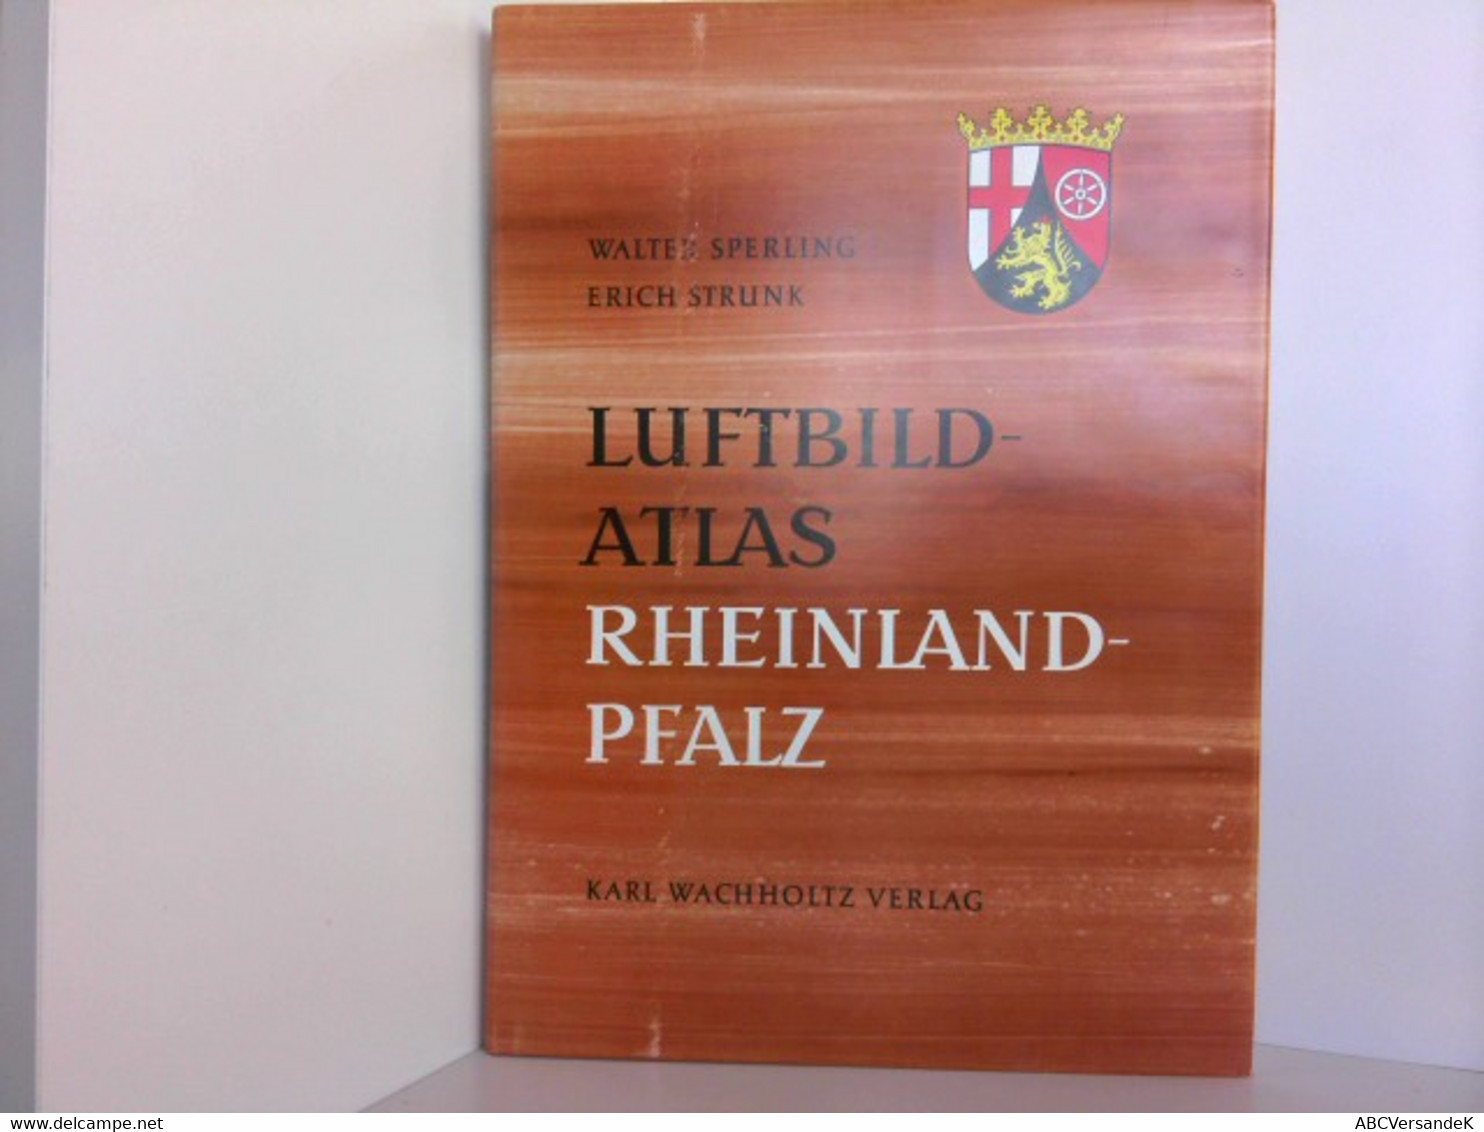 Luftbild-Atlas. Rheinland-Pfalz, Eine Landeskunde - Alemania Todos